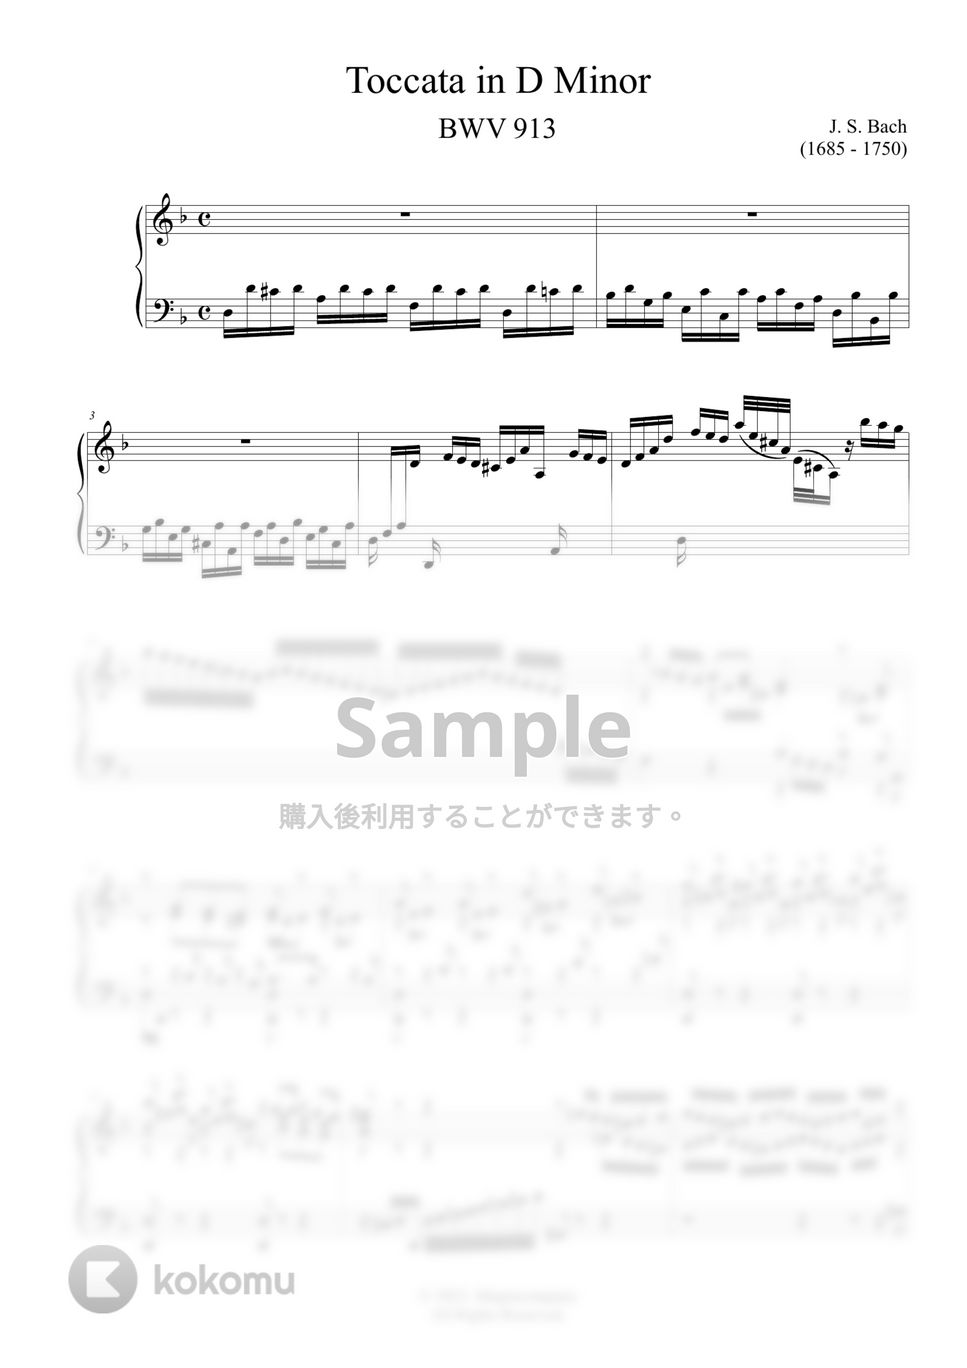 バッハ - トッカータ ニ短調 BWV 913 by ココミュオリジナル